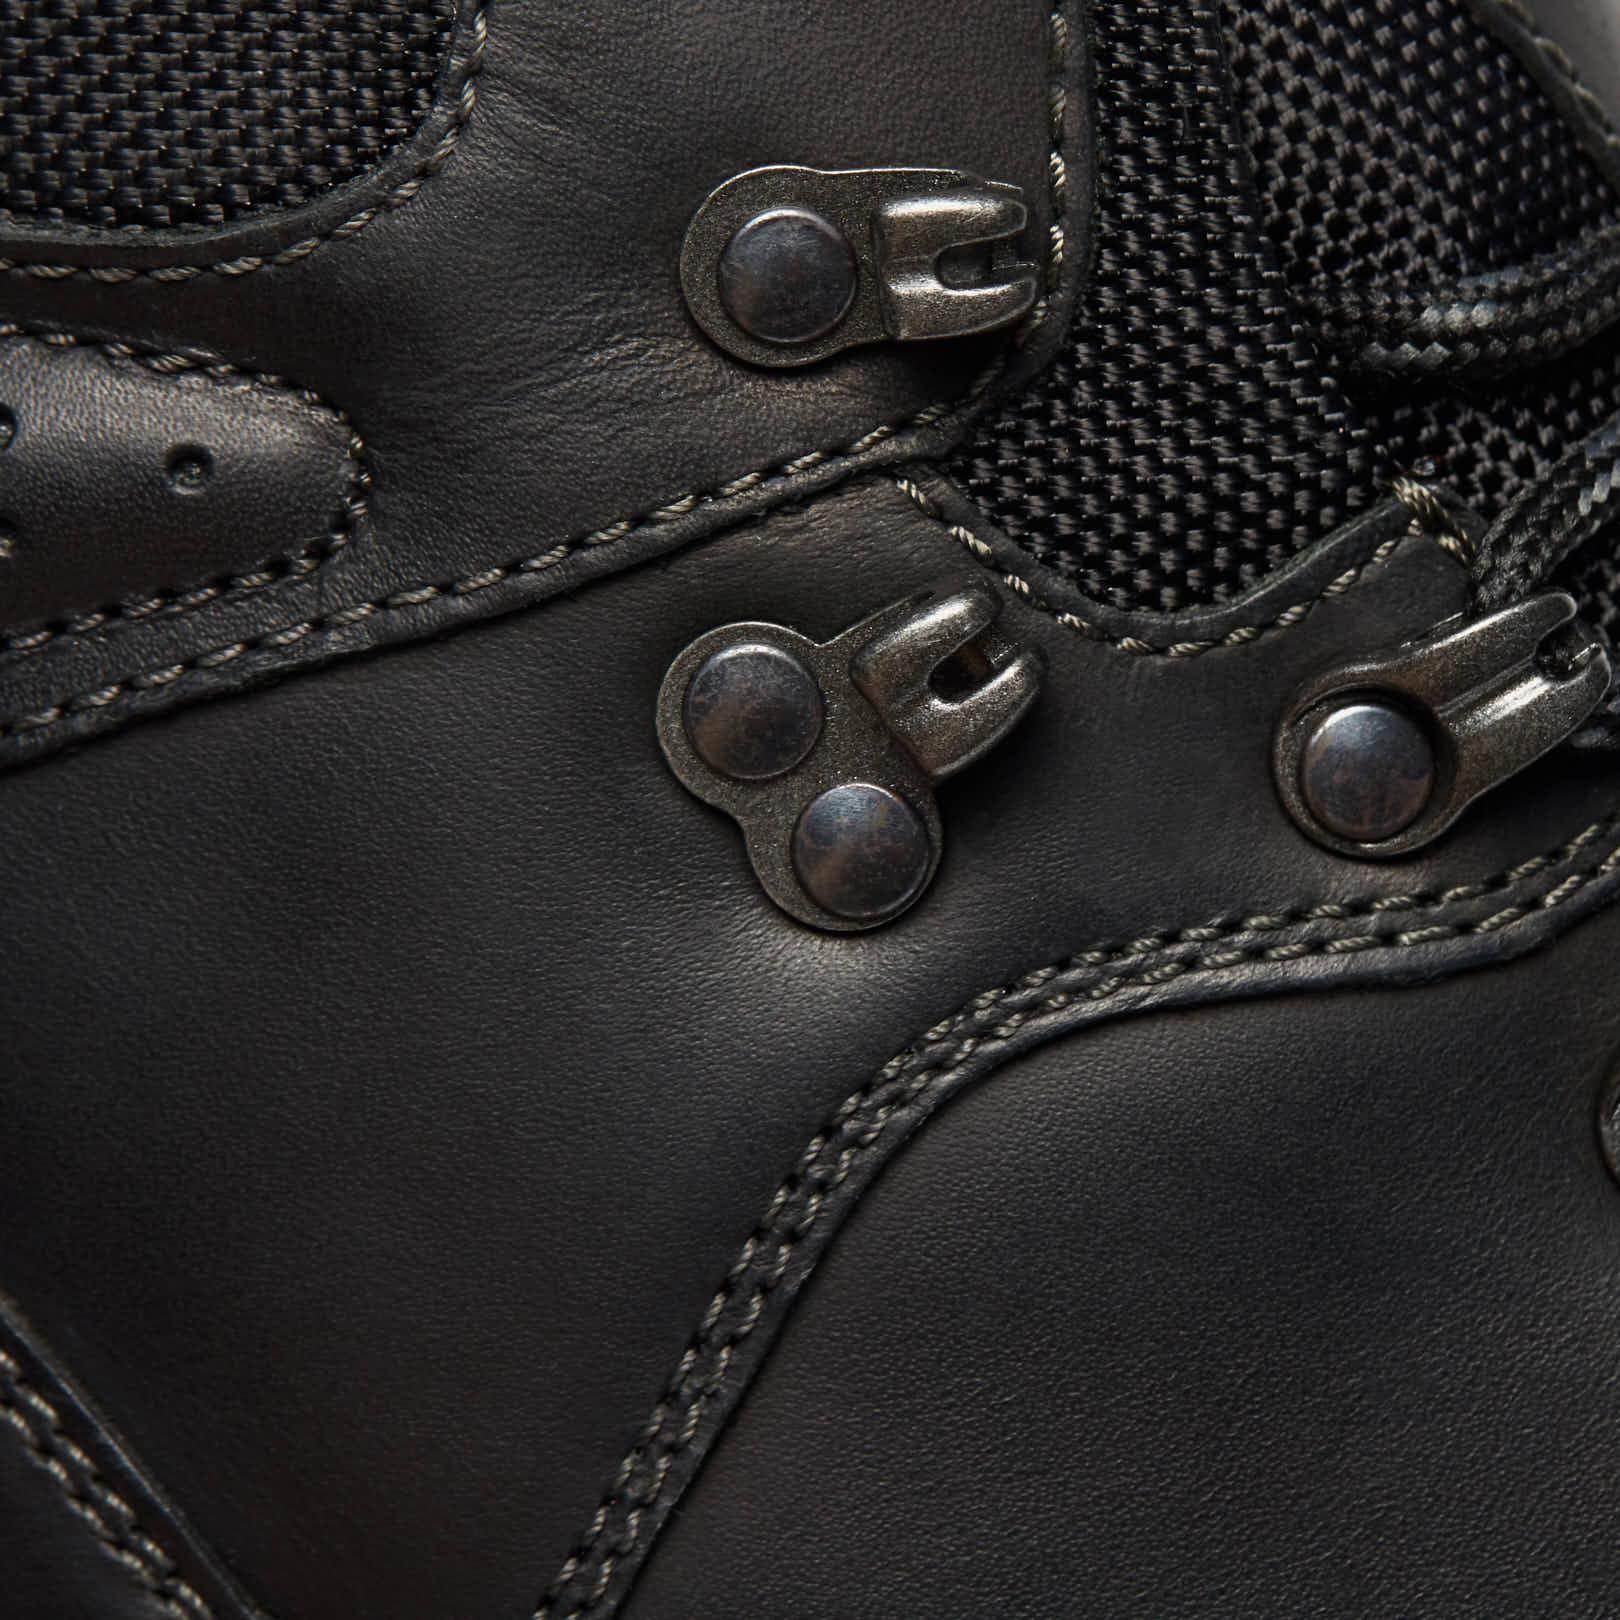 Высокие ботинки мужские HIKER (цвет черный, натуральная  кожа,спилок,текстиль) — купить по цене 6990 р. в интернет-магазине RALF  RINGER | Стильная мужская обувь в Москве